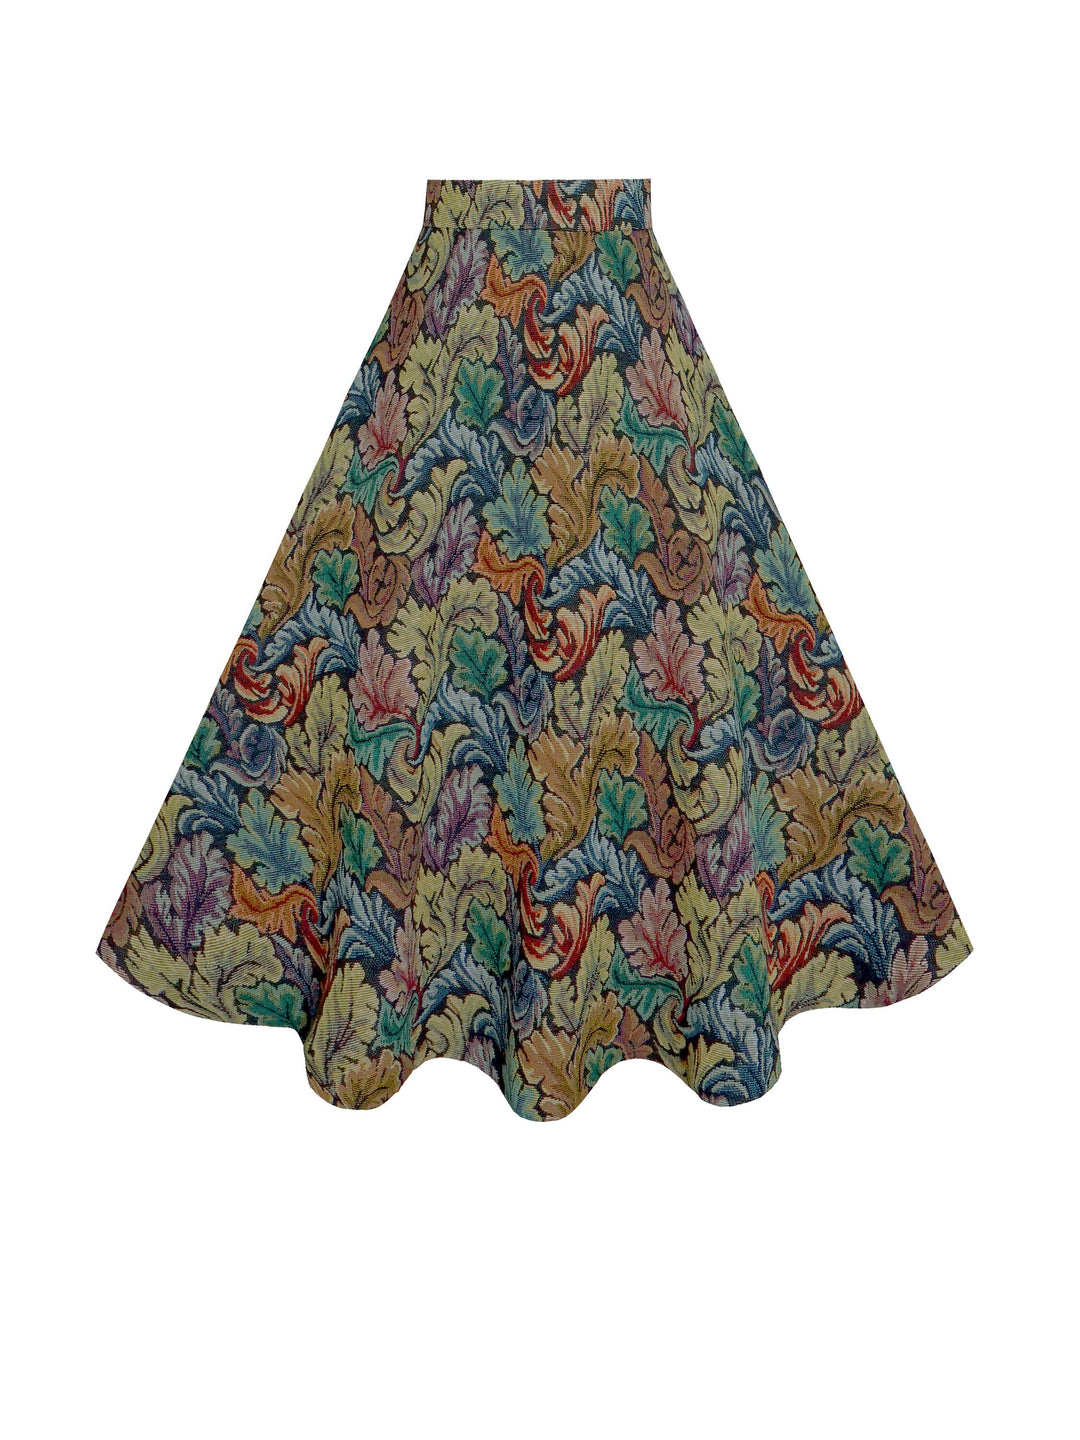 RTS - Size S - Lilian Skirt Tapestry "Bohemian Botanical"